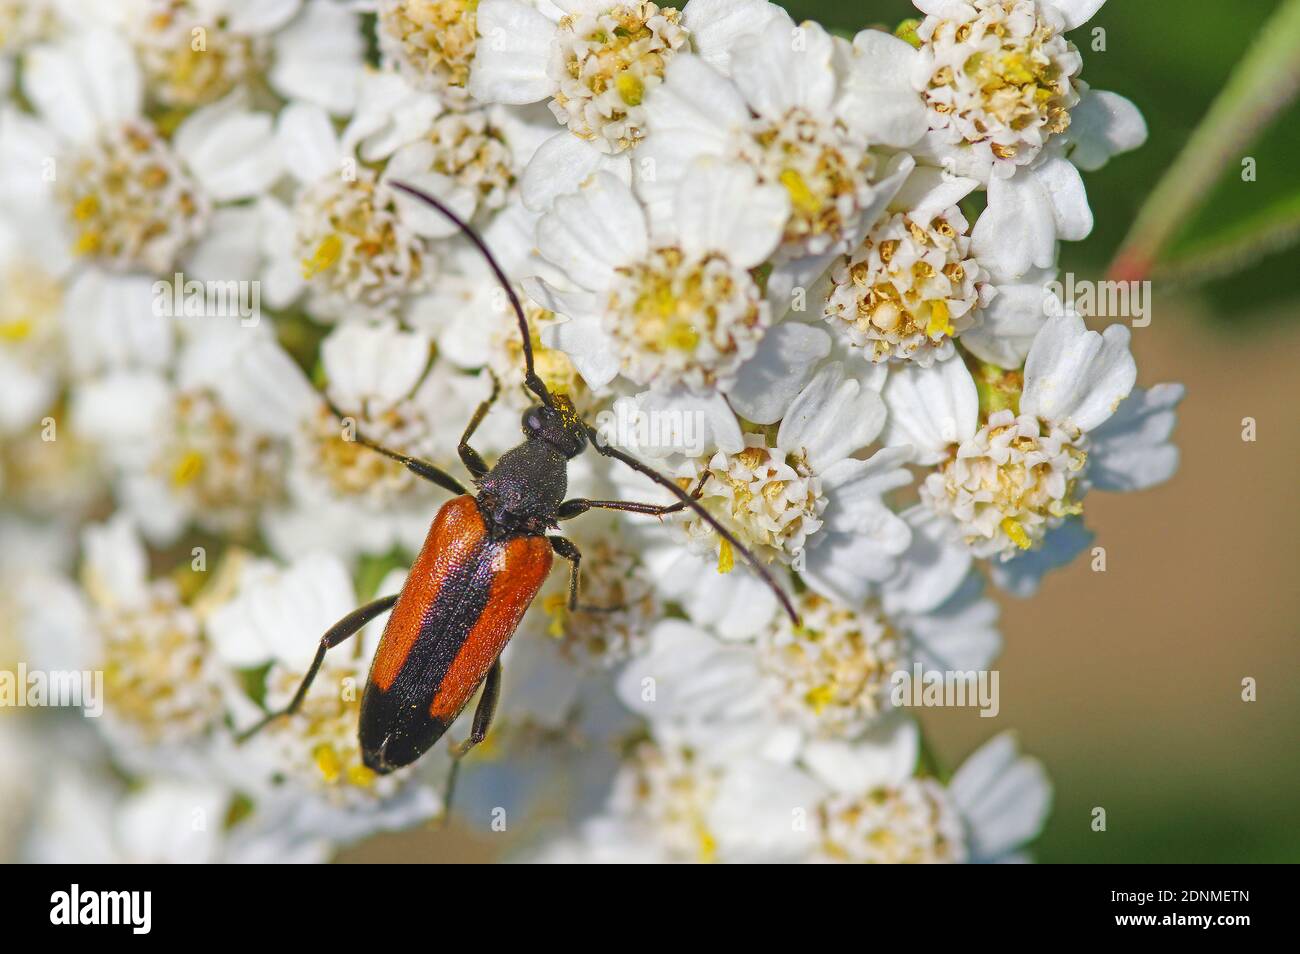 Longhorn Beetle (Stenurella melanura) on Yarrow (Achillea clavenae) flowers. Germany Stock Photo